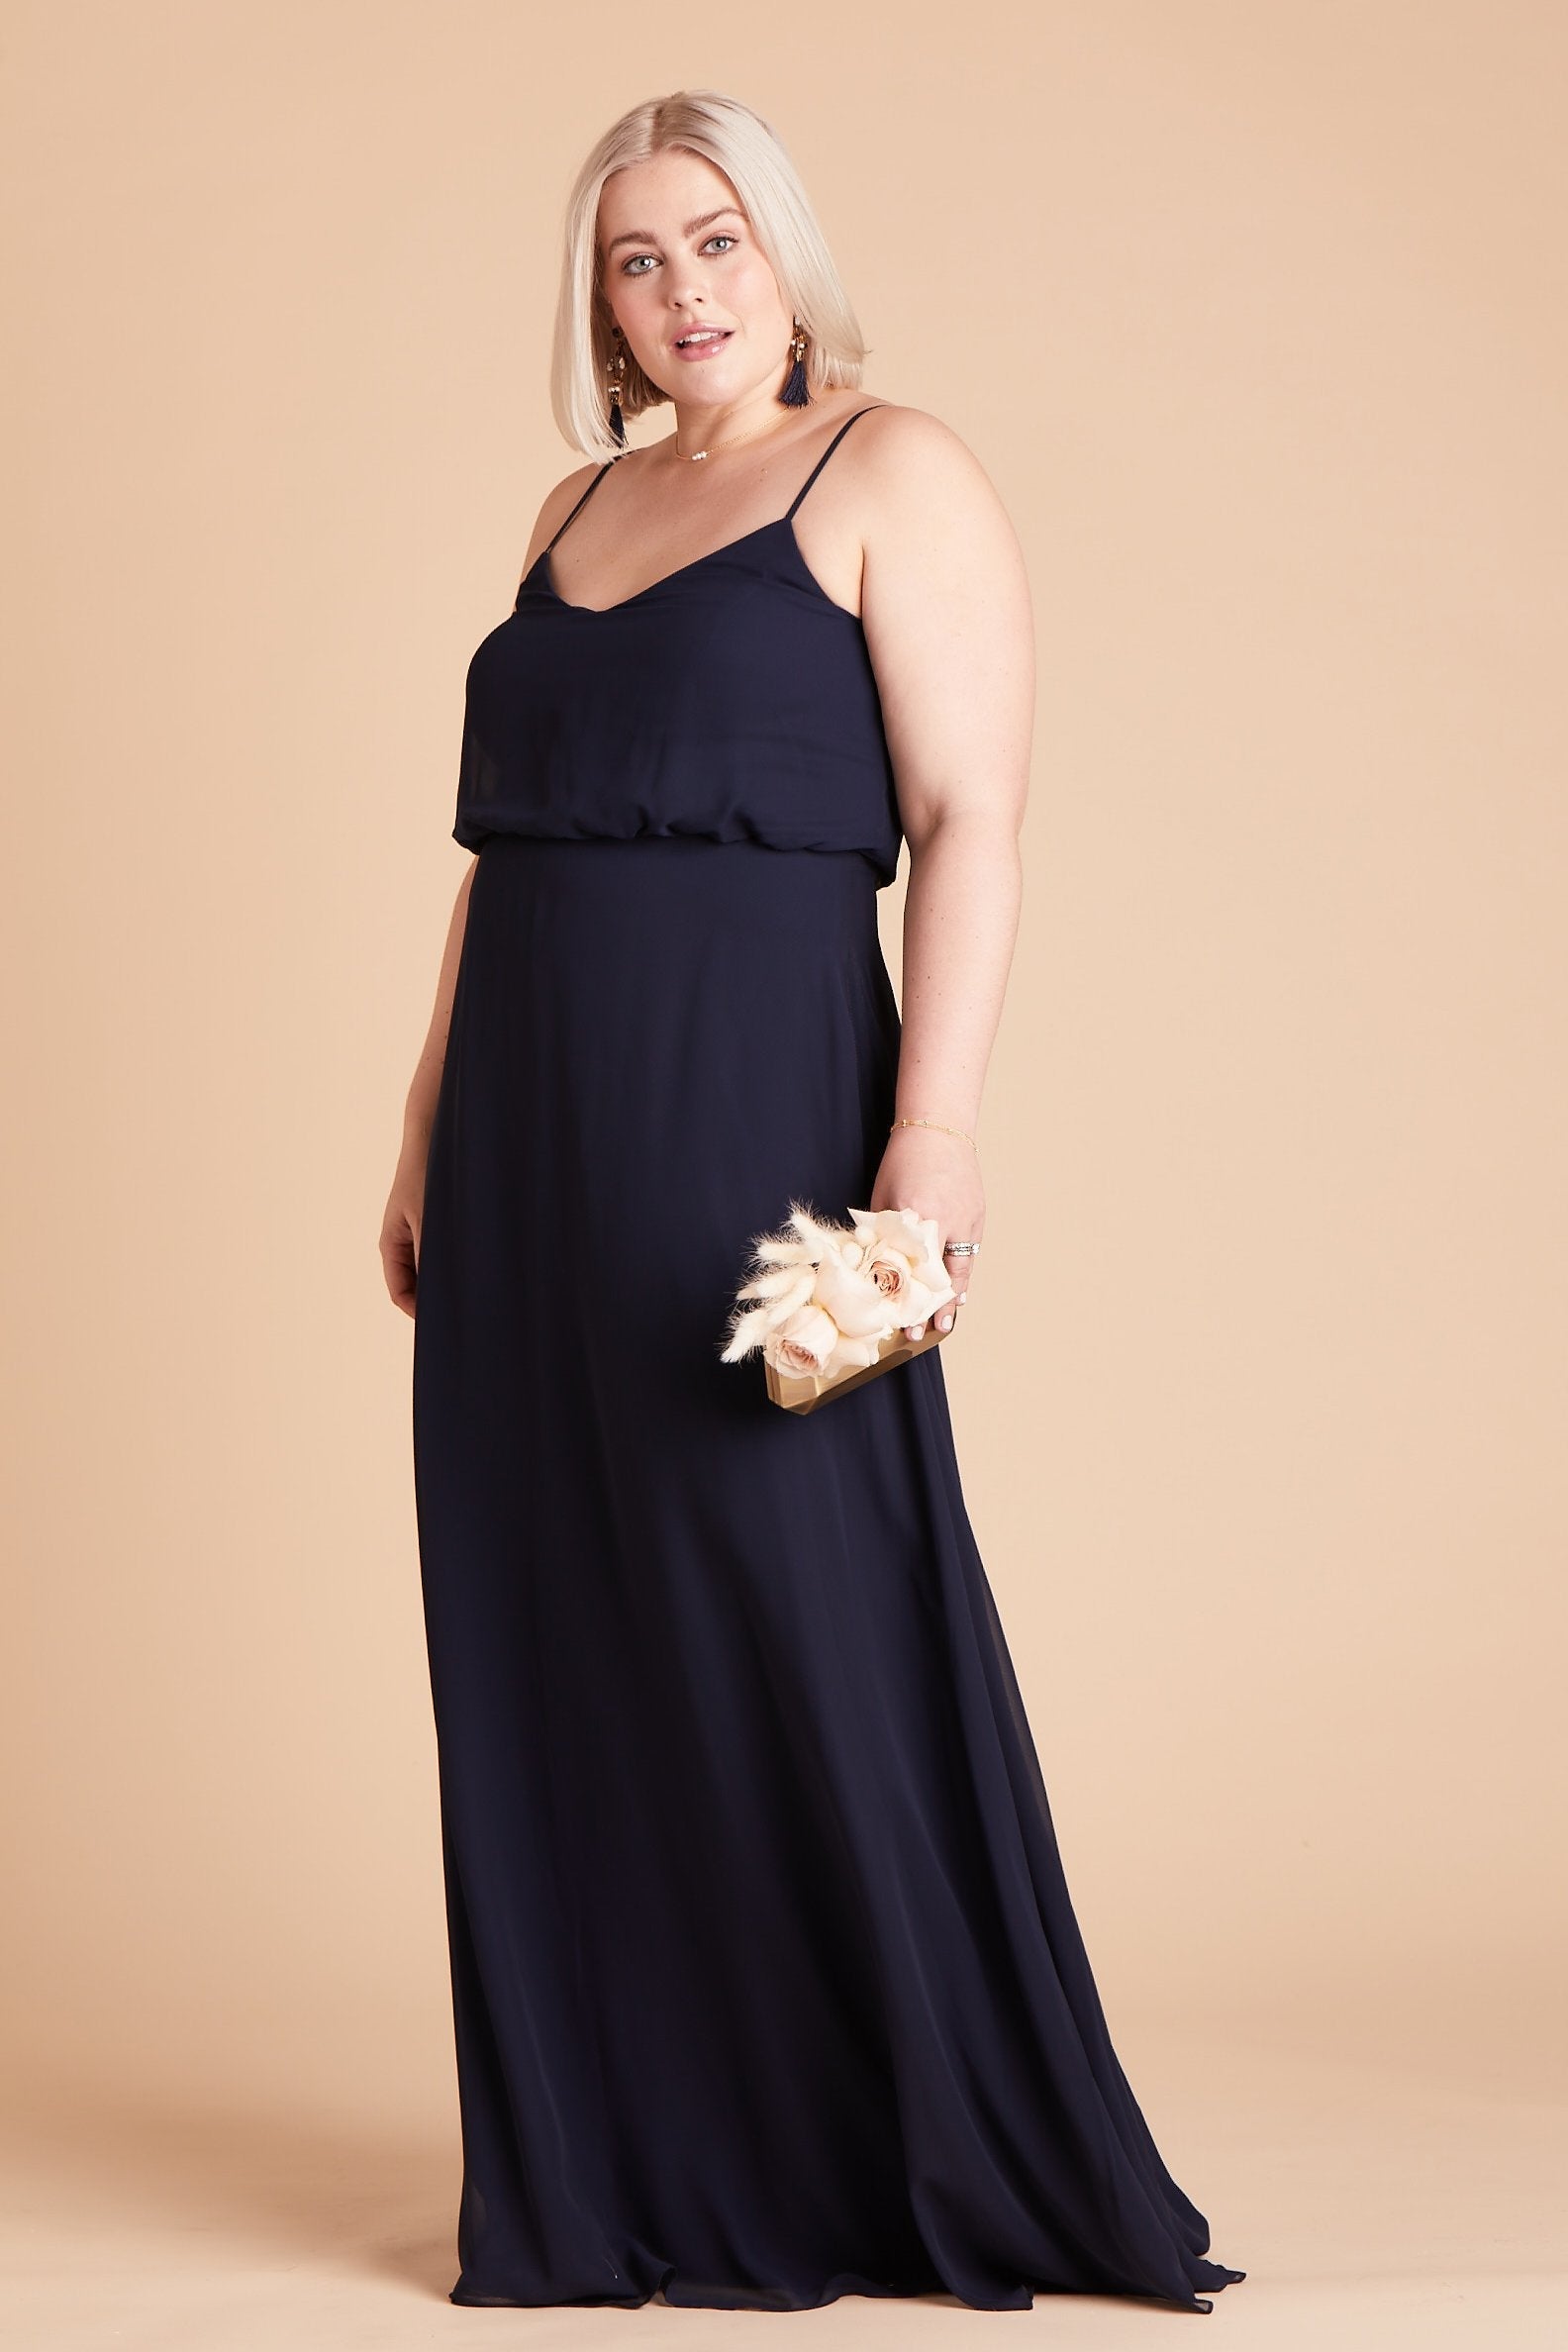 Gwennie plus size bridesmaid dress in navy blue chiffon by Birdy Grey, side view